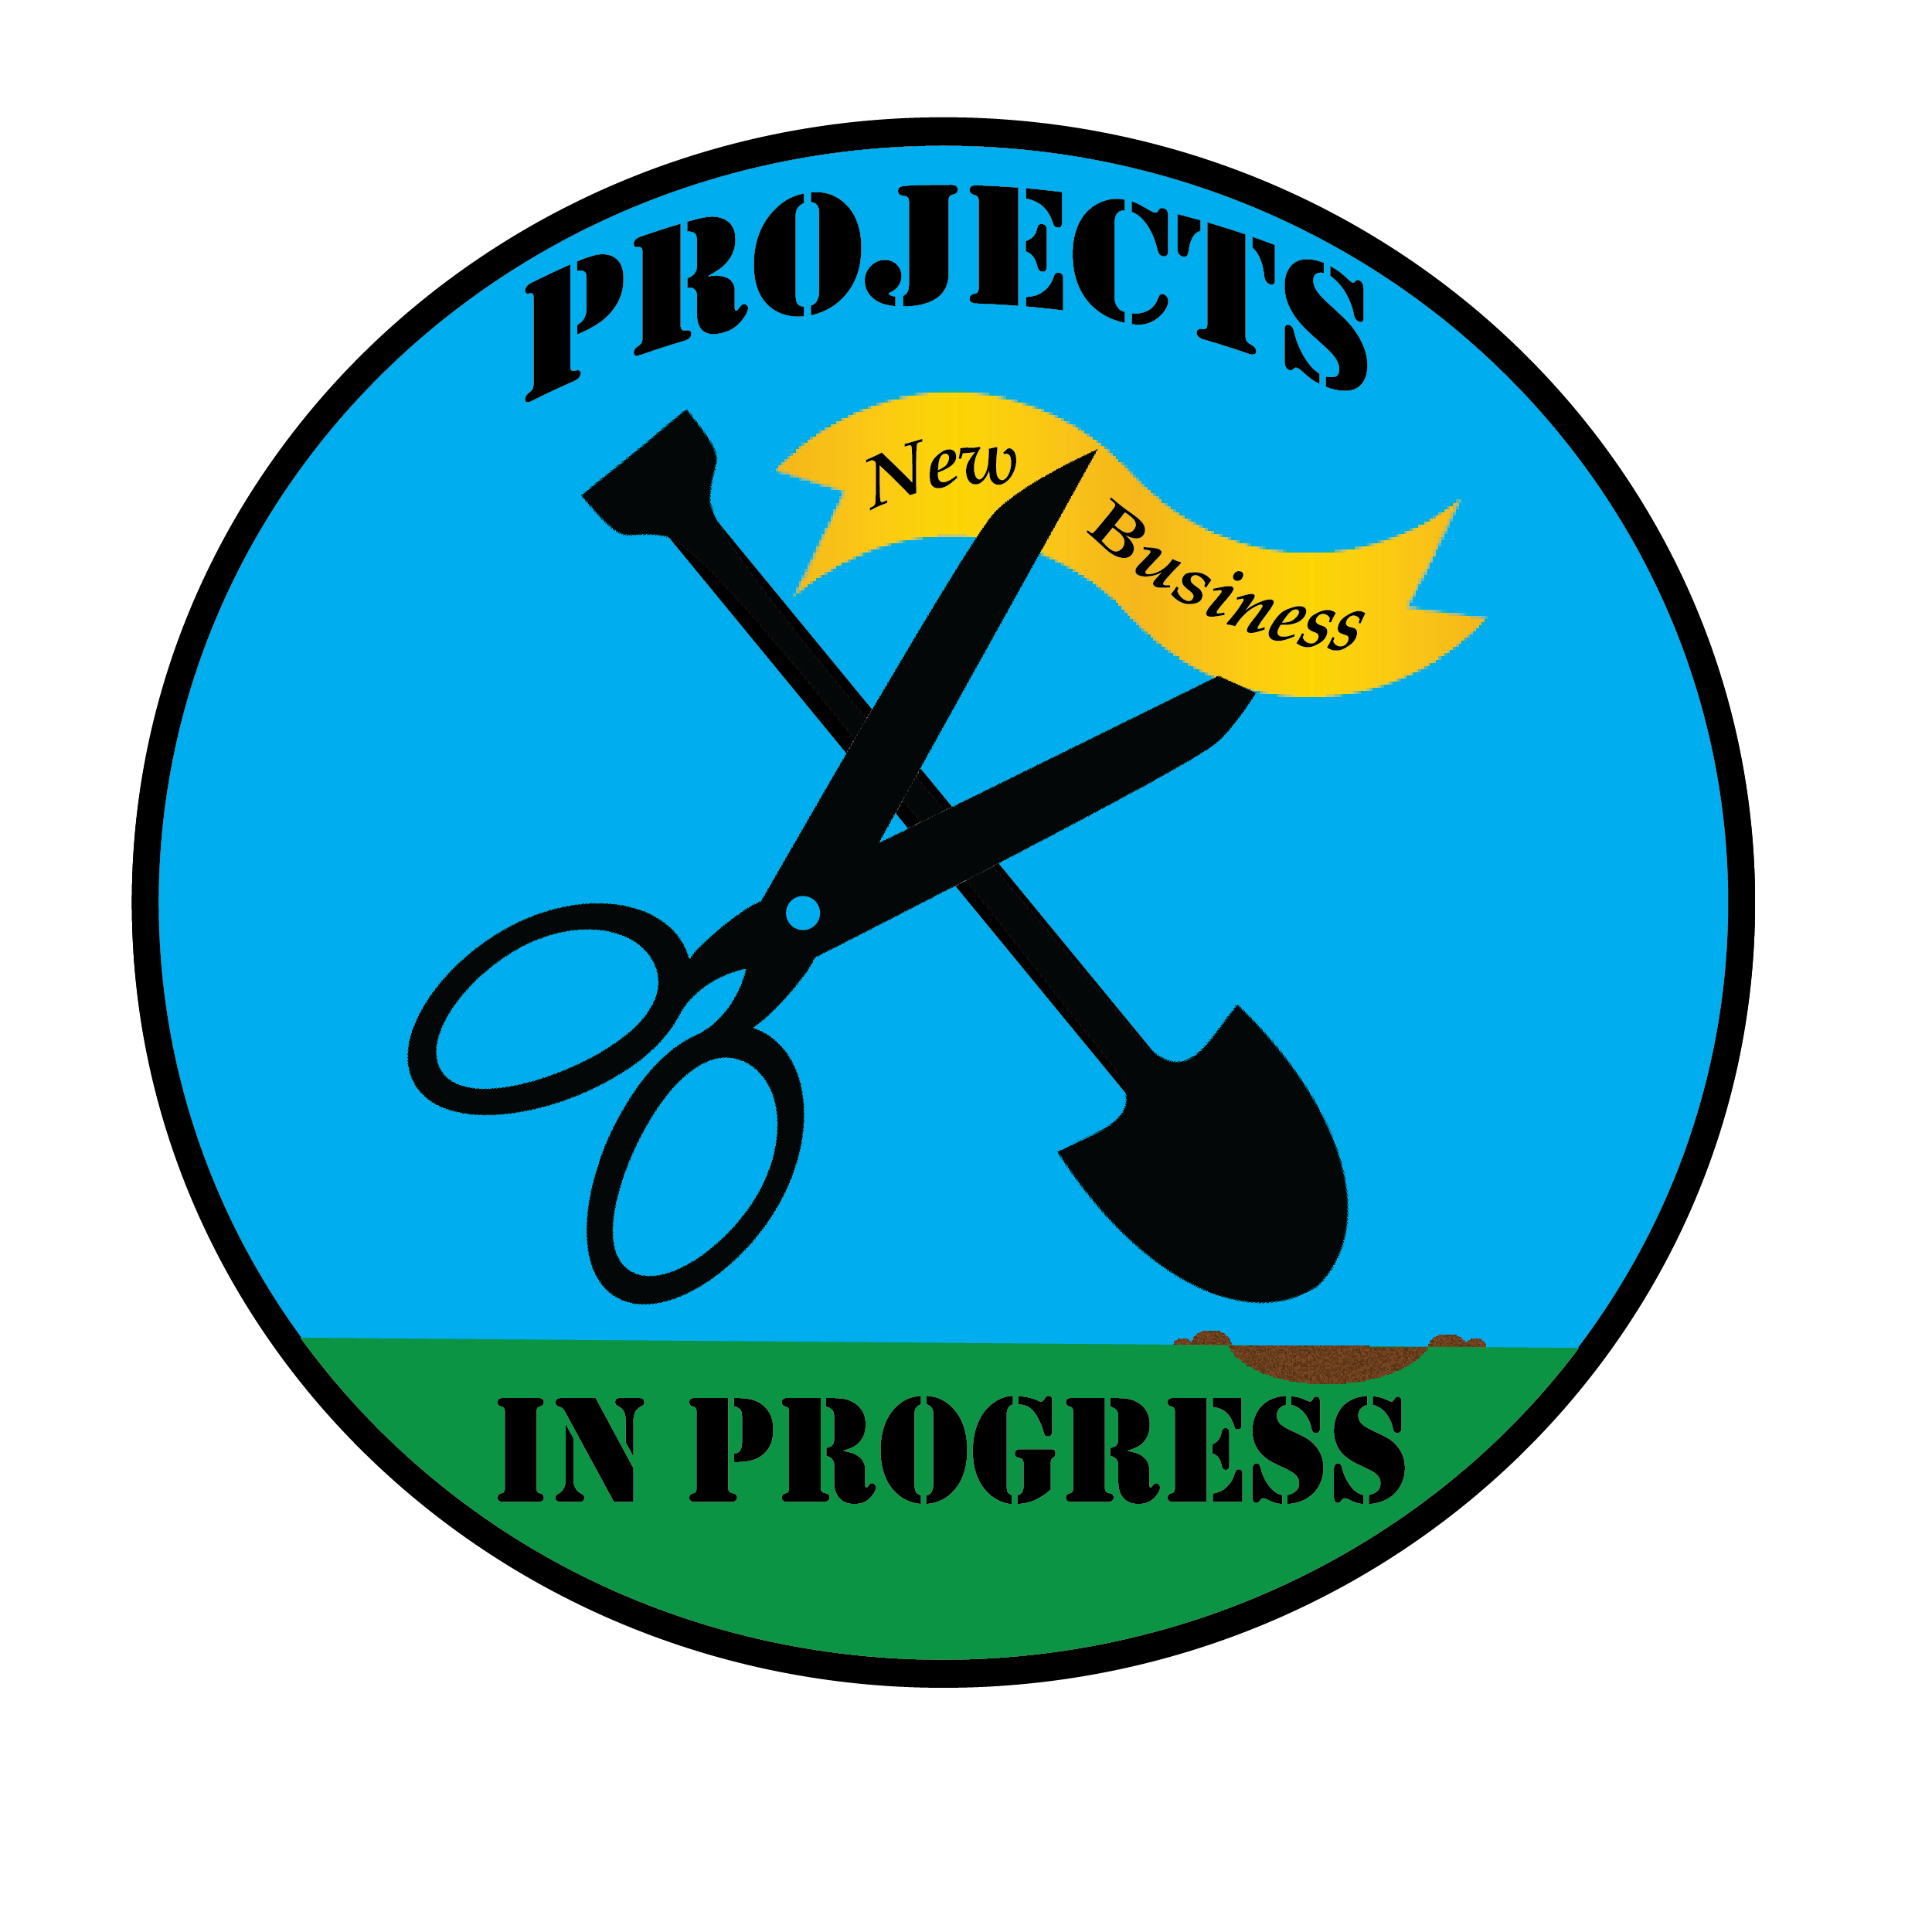 Projects in Progress